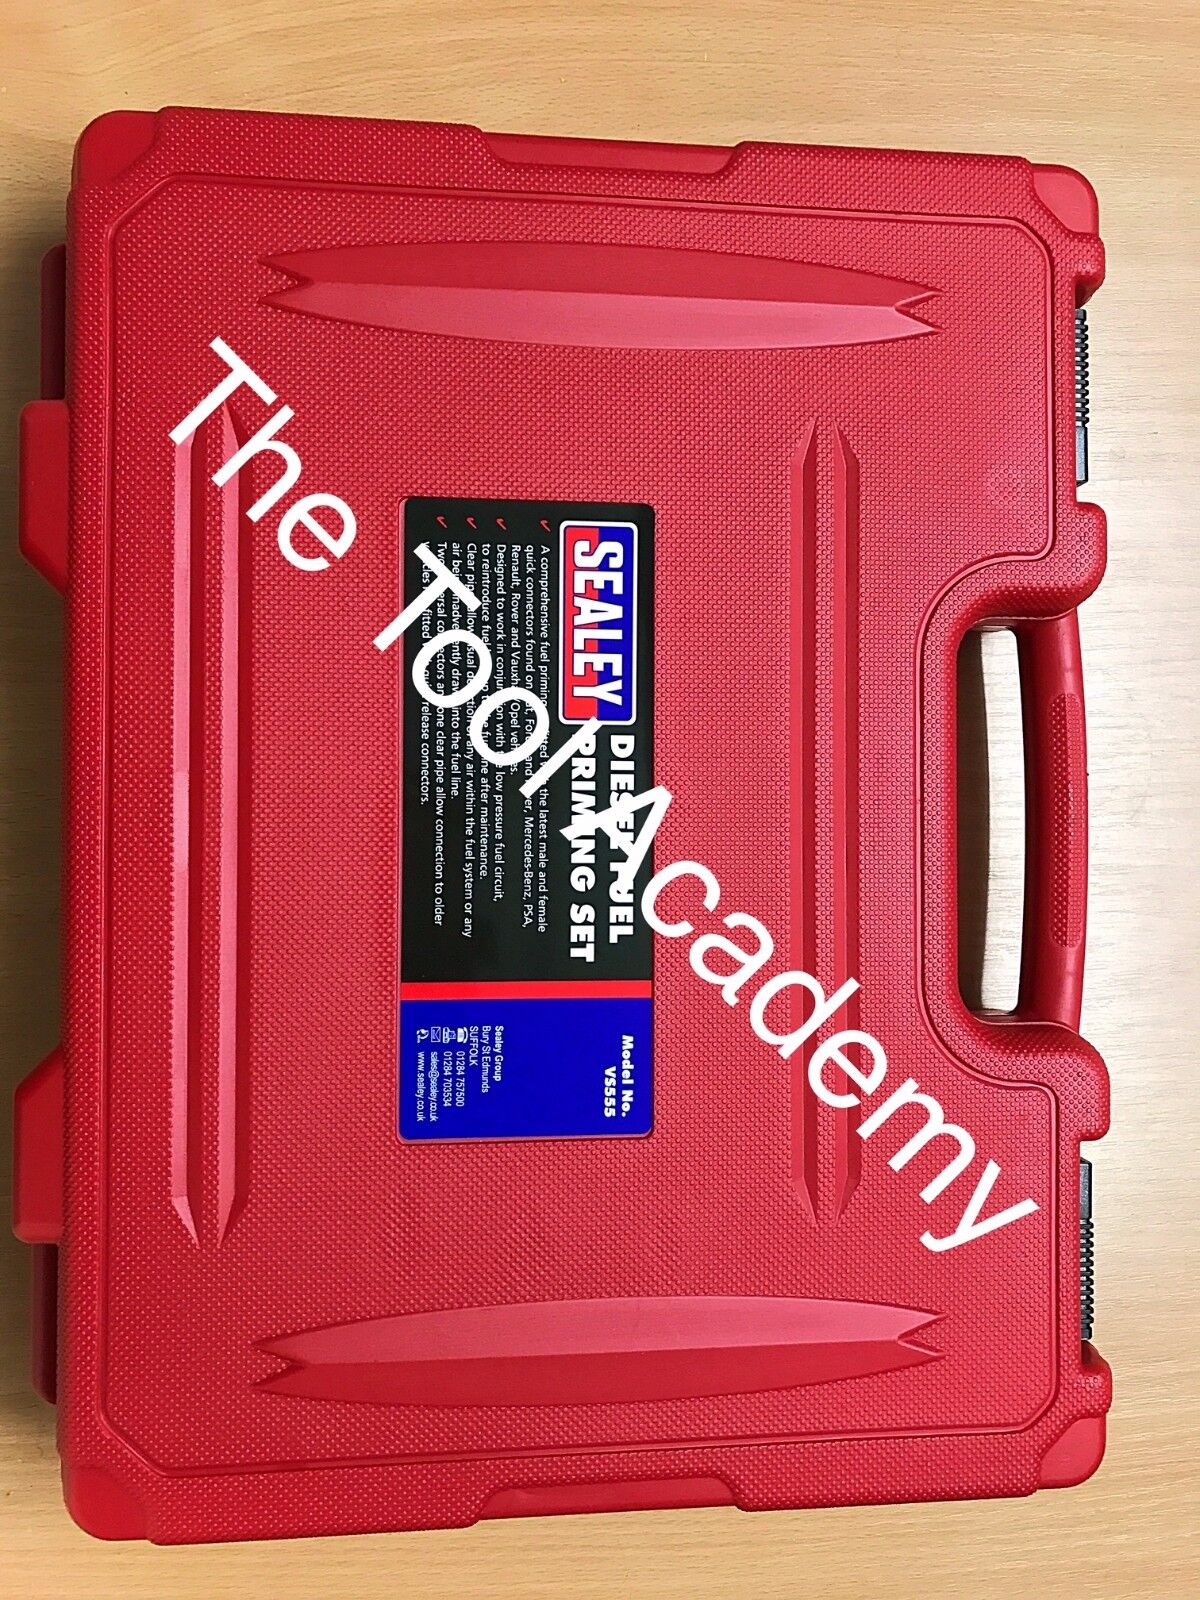 Tool Academy Sale Diesel Engine Fuel Primer Priming /& Bleeding Tool Kit in Case